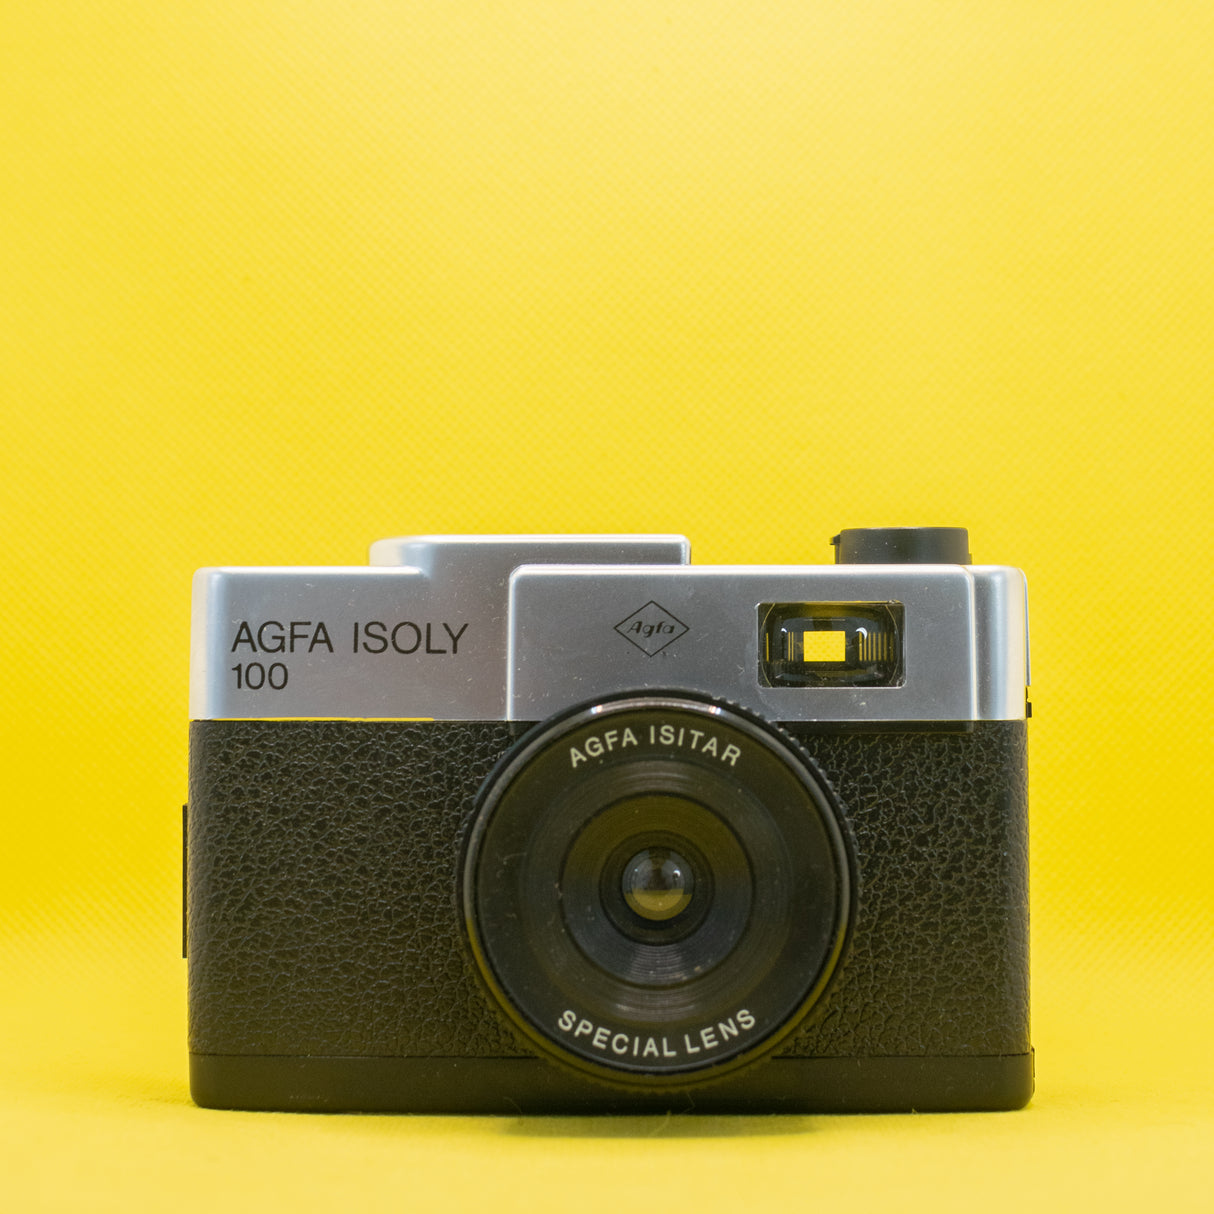 Cómo usar lentes u objetivos vintage en cámaras modernas 